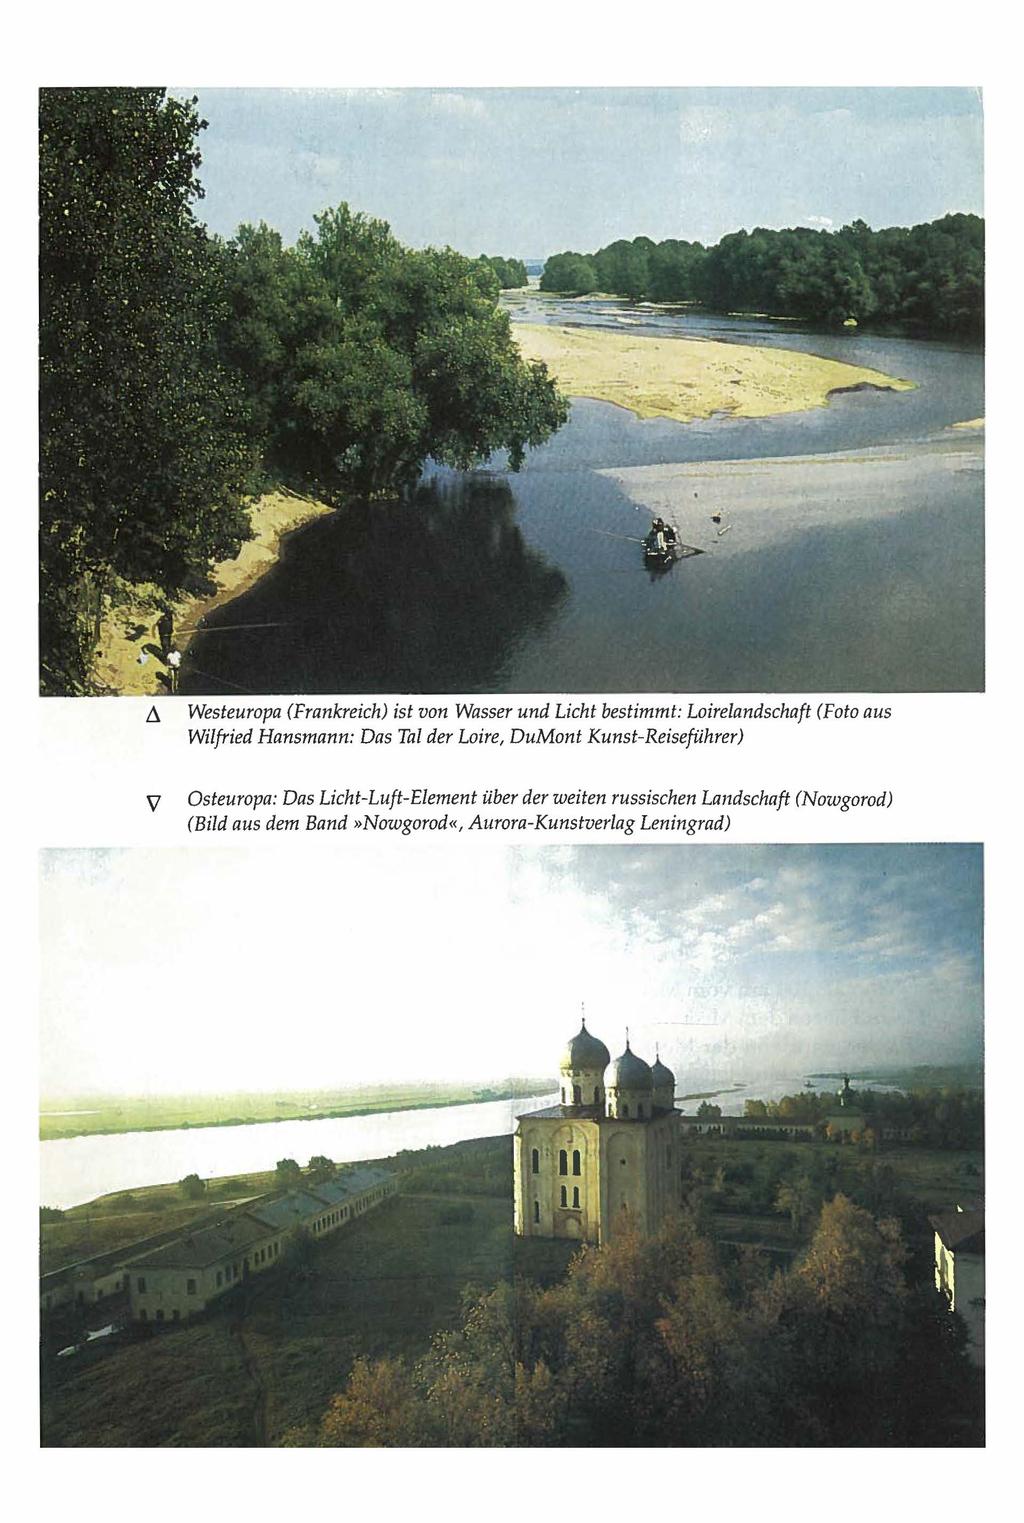 Ll V Westeuropa (Frankreich) ist von Wasser und Licht bestimmt: Loirelandschaft (Foto aus Wilfried Hansmann: Das Tal der Loire, DuMont